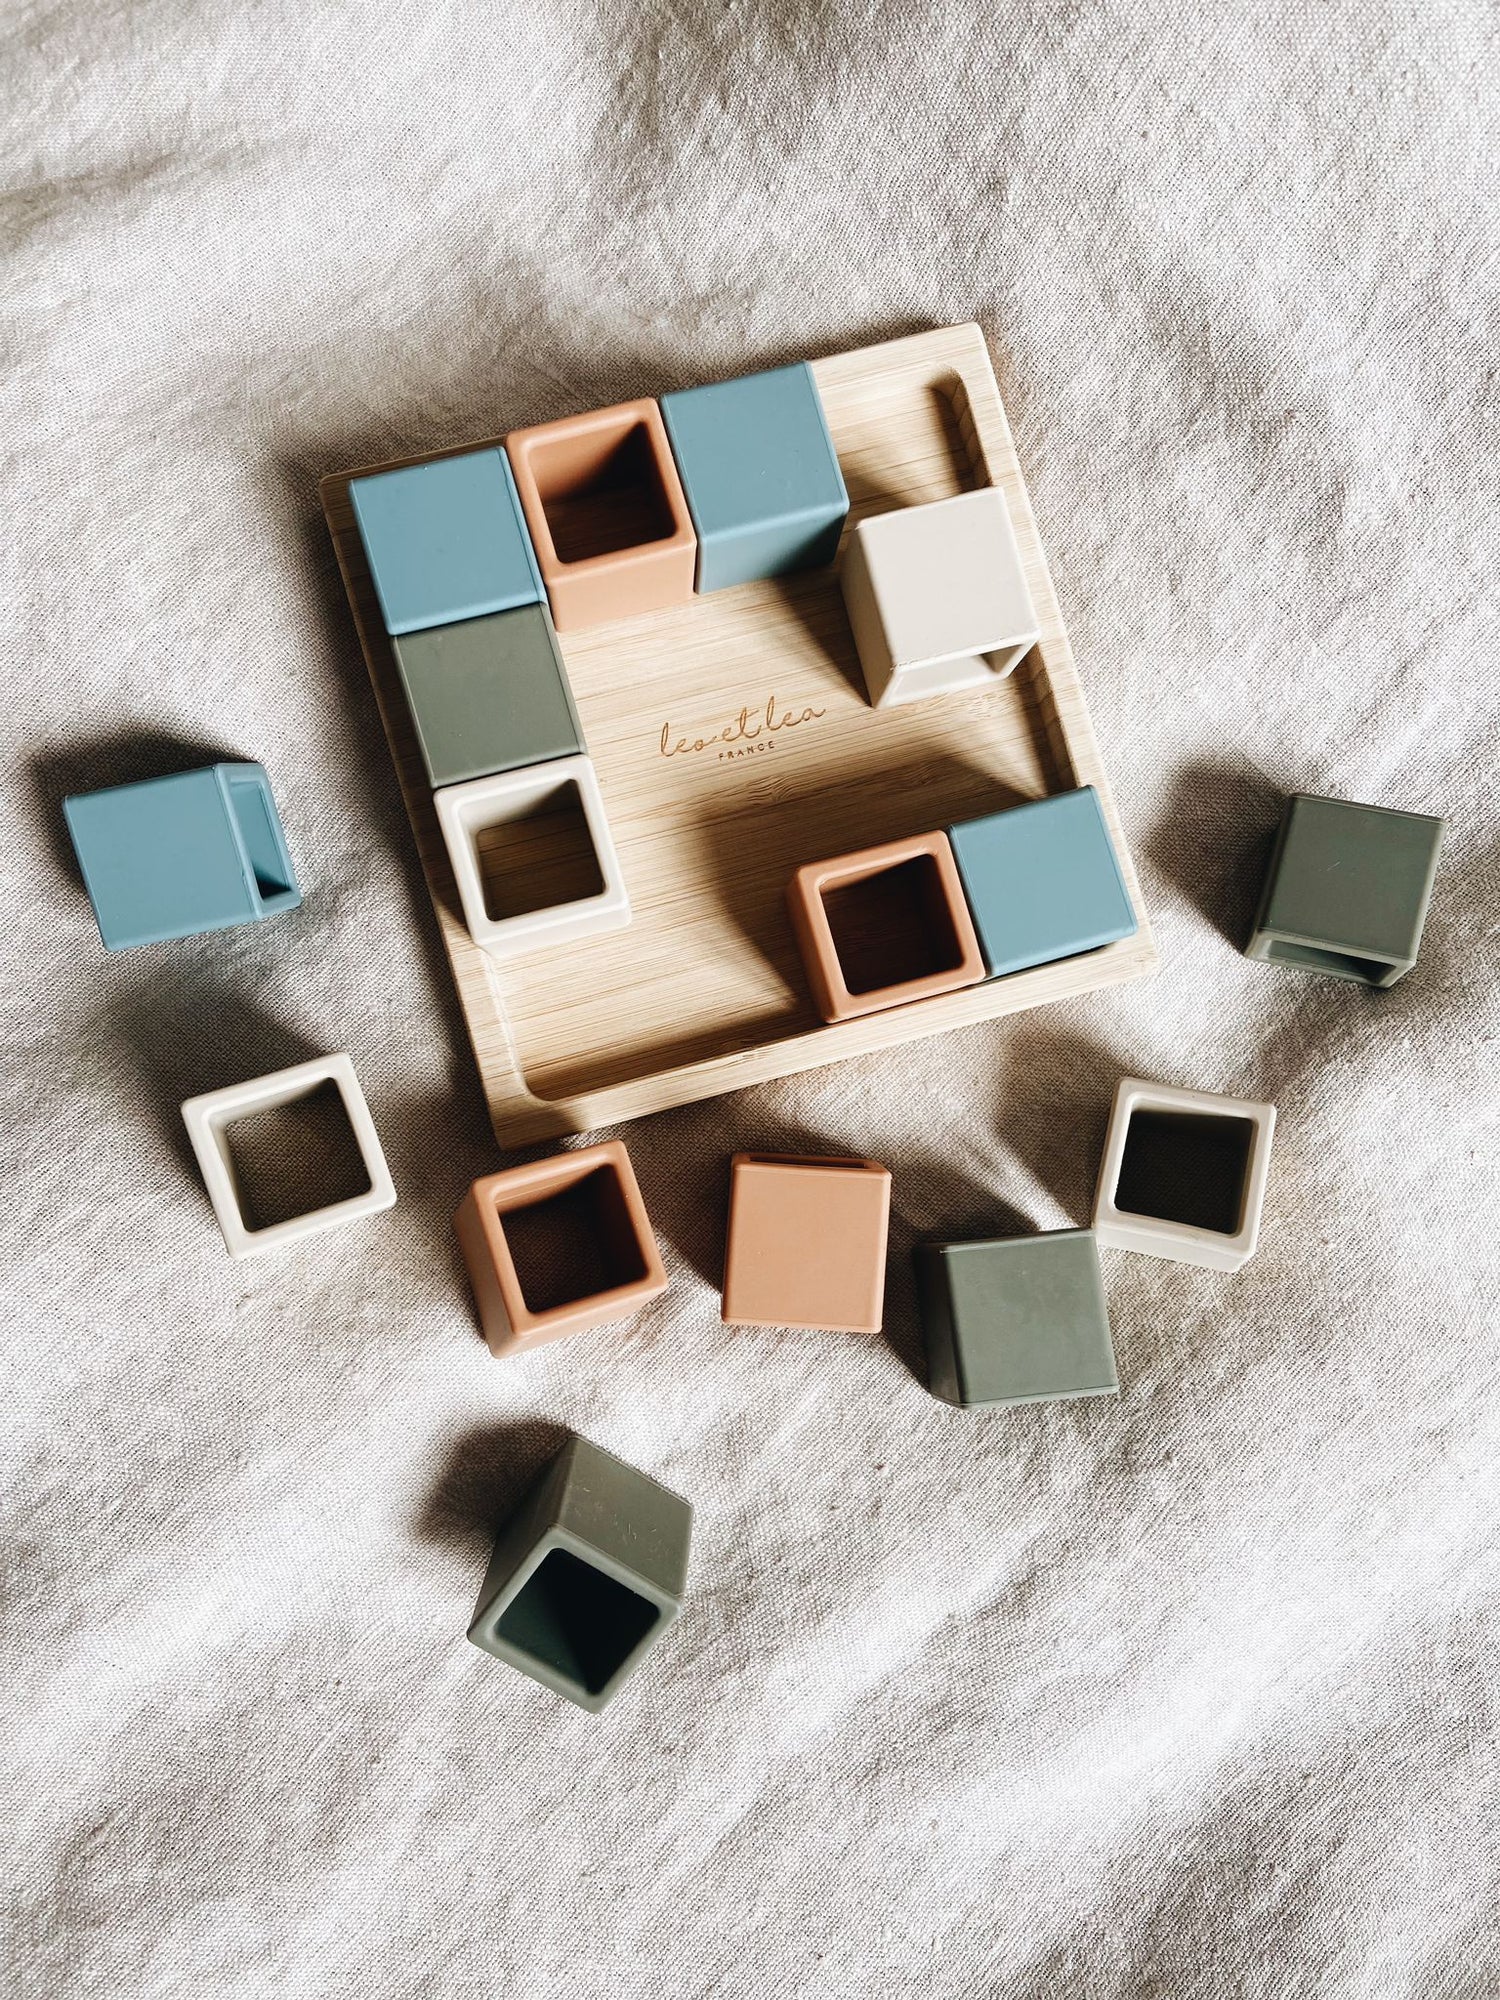 Cubes en silicone de différentes couleurs (bleu, terra cotta, écru, vert sauge) sur plateau en bois. Jeu de construction premier âge. Eveil sensoriel, créativité et imagination.